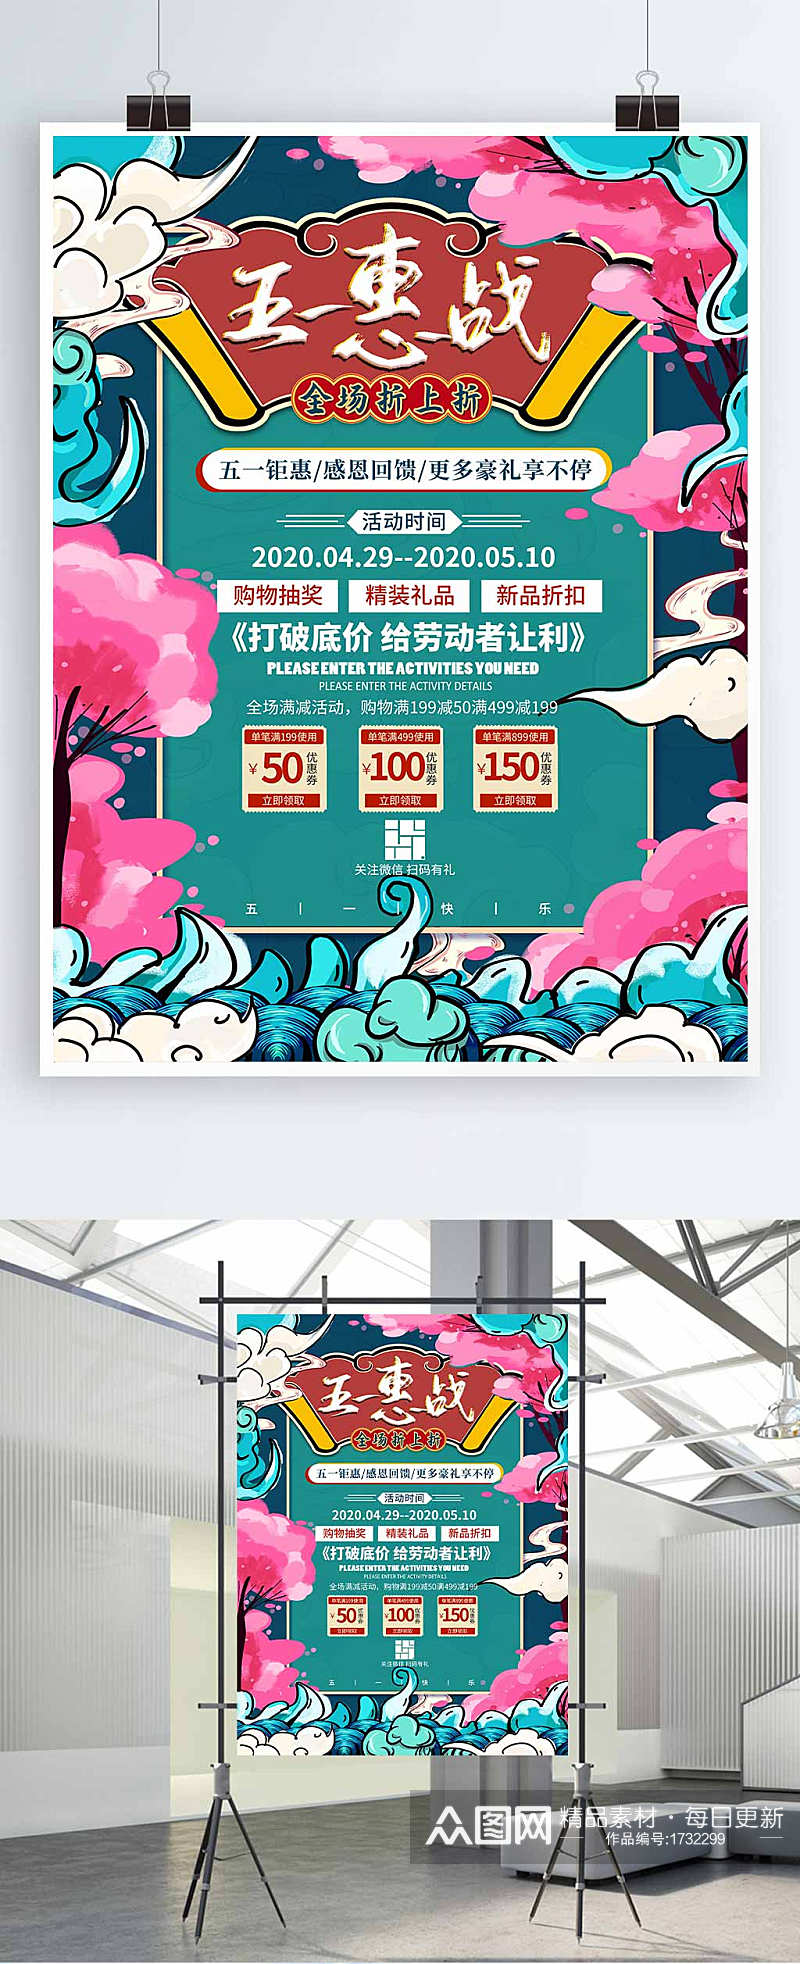 51惠战促销宣传海报素材